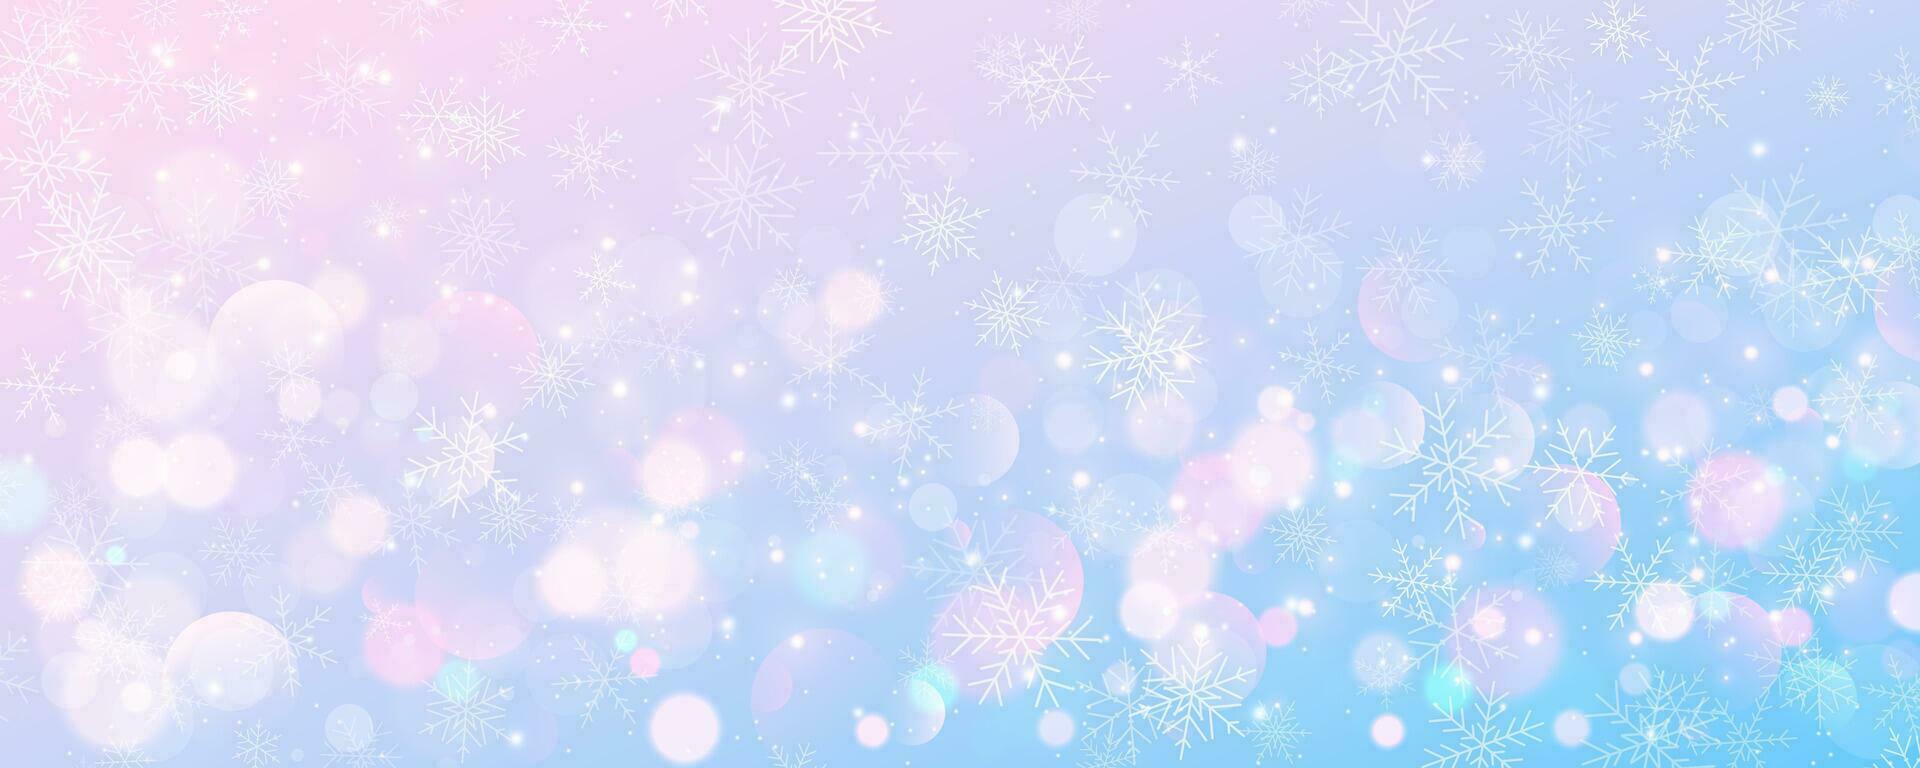 Navidad Nevado antecedentes. frío rosado azul pastel invierno cielo. vector hielo tormenta de nieve en degradado textura con bokeh y copos festivo nuevo año tema para temporada rebaja fondo de pantalla.